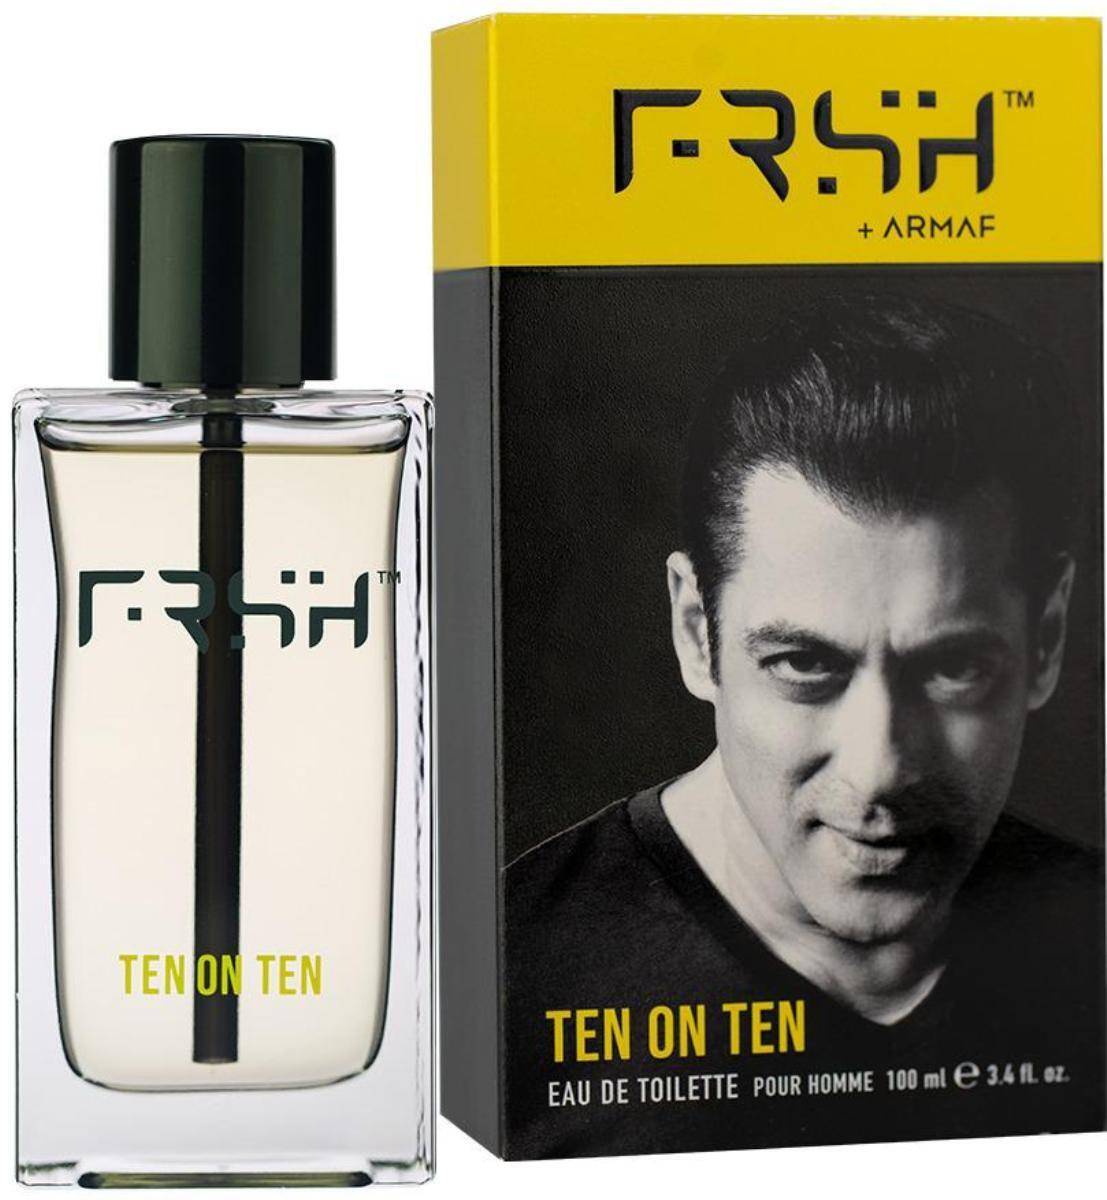 ARMAF FRSH TEN ON TEN 3.4 COLOGNE an Allure Inspired – Best Brands Perfume